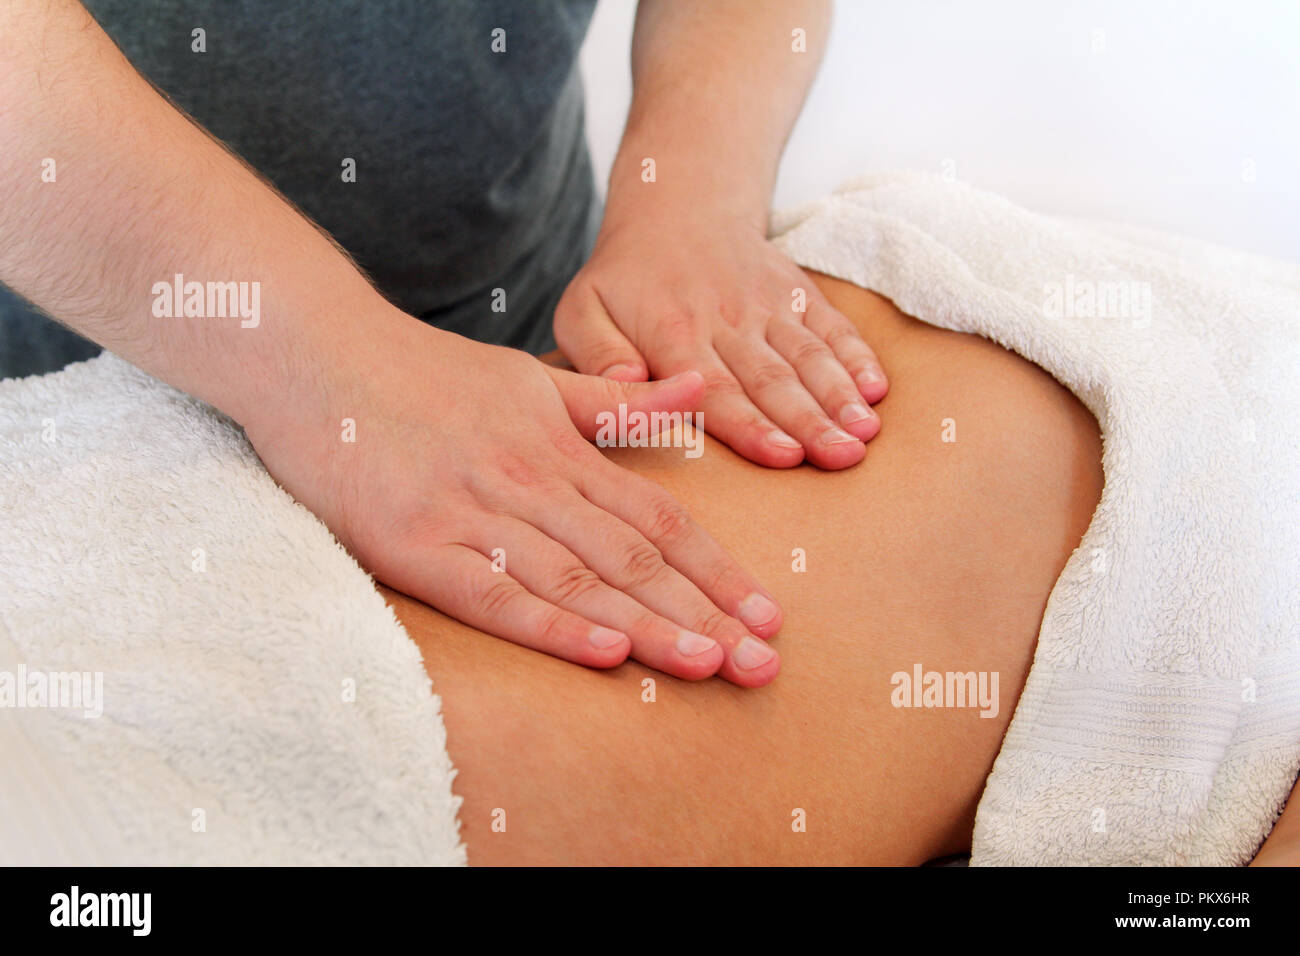 Bauch massage Massage Studio. Nahaufnahme von Händen massieren weiblichen  Unterleib. Masseur Mädchen Bauch zu massieren. Therapeut Druck auf dem  Bauch Stockfotografie - Alamy